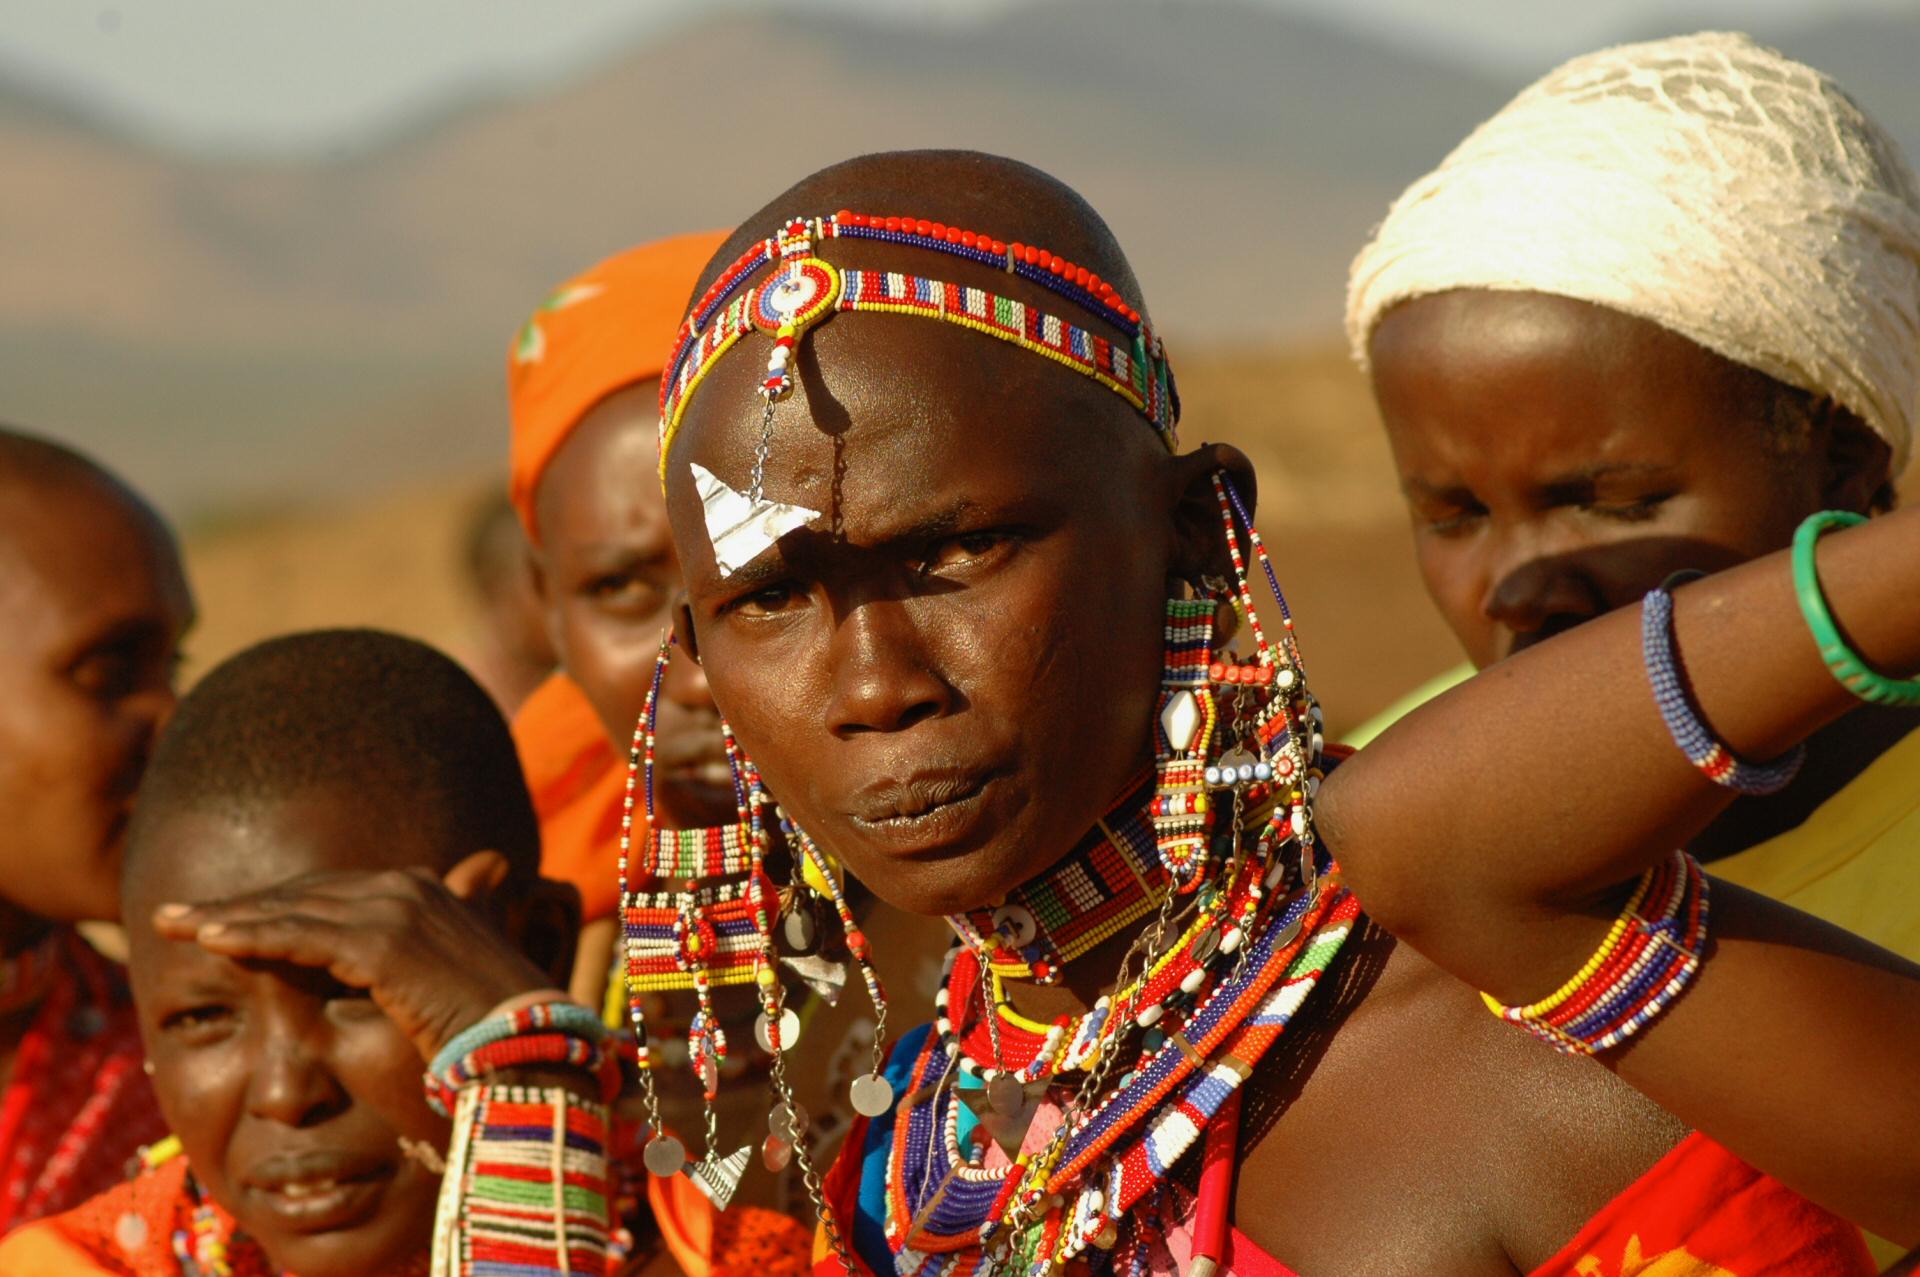 Incontro con i Masai durante il safari in Kenya